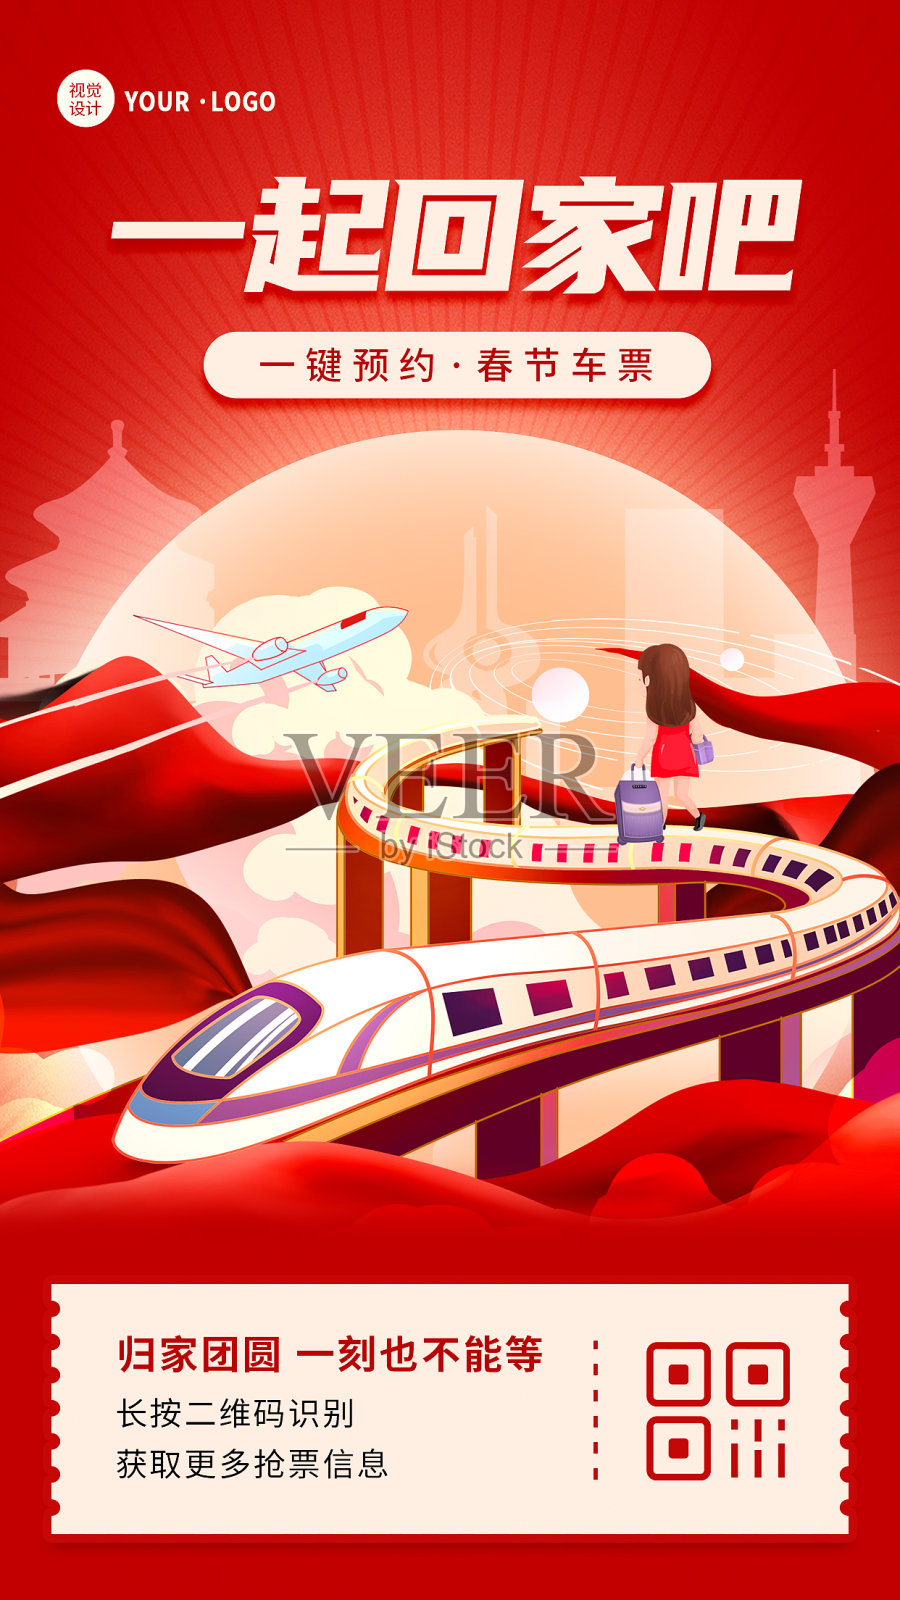 红色扁平大气春运春节抢票宣传手机海报设计模板素材